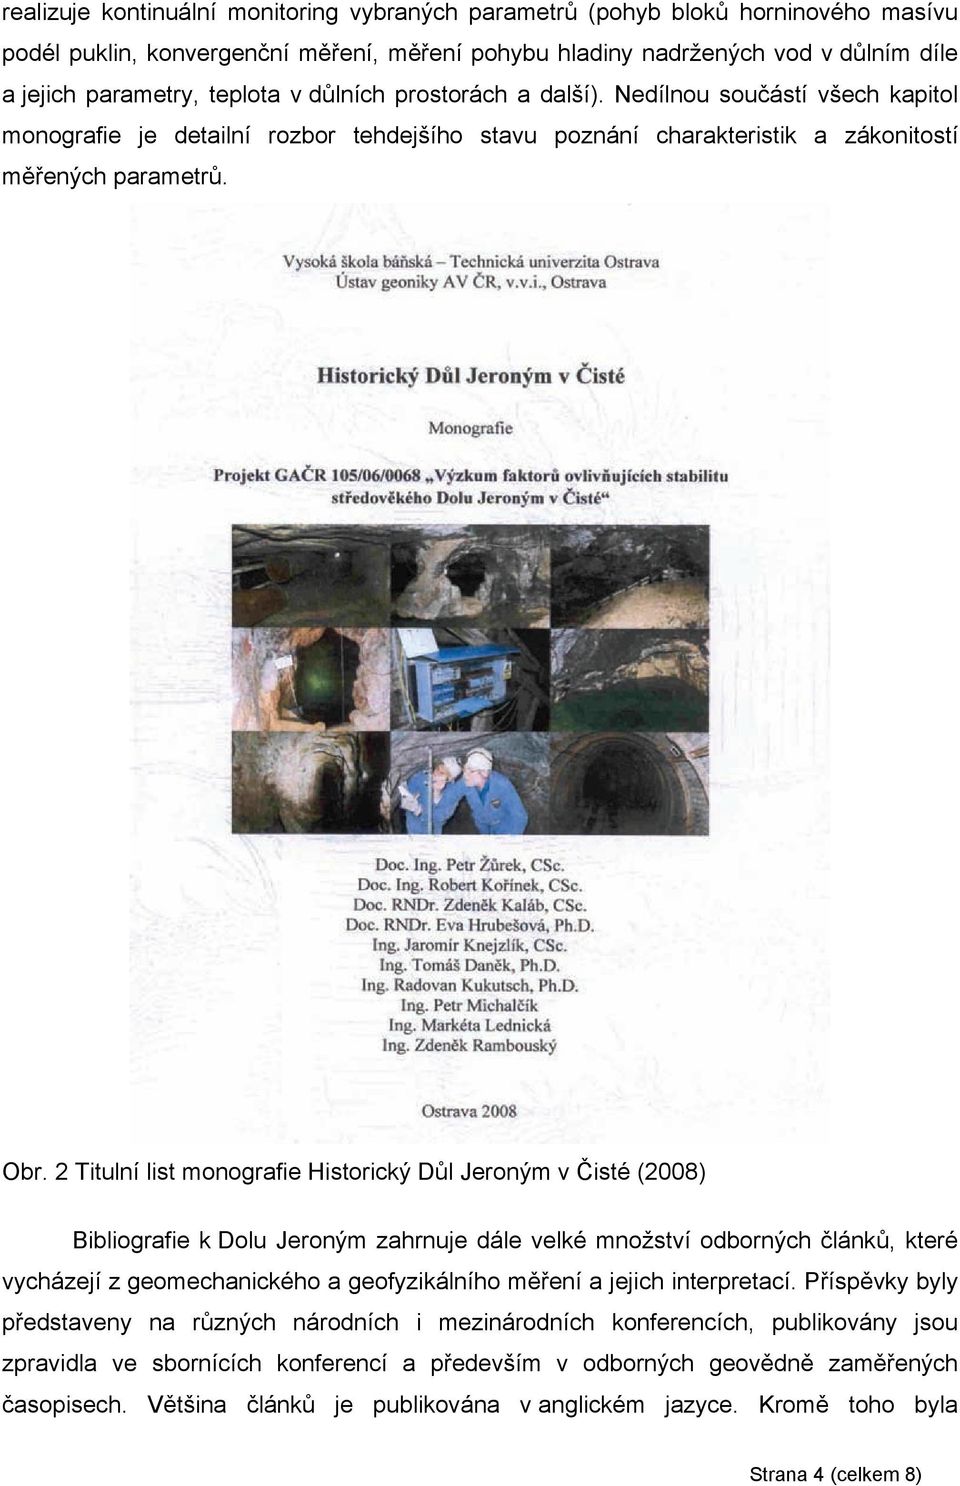 2 Titulní list monografie Historický Důl Jeroným v Čisté (2008) Bibliografie k Dolu Jeroným zahrnuje dále velké množství odborných článků, které vycházejí z geomechanického a geofyzikálního měření a